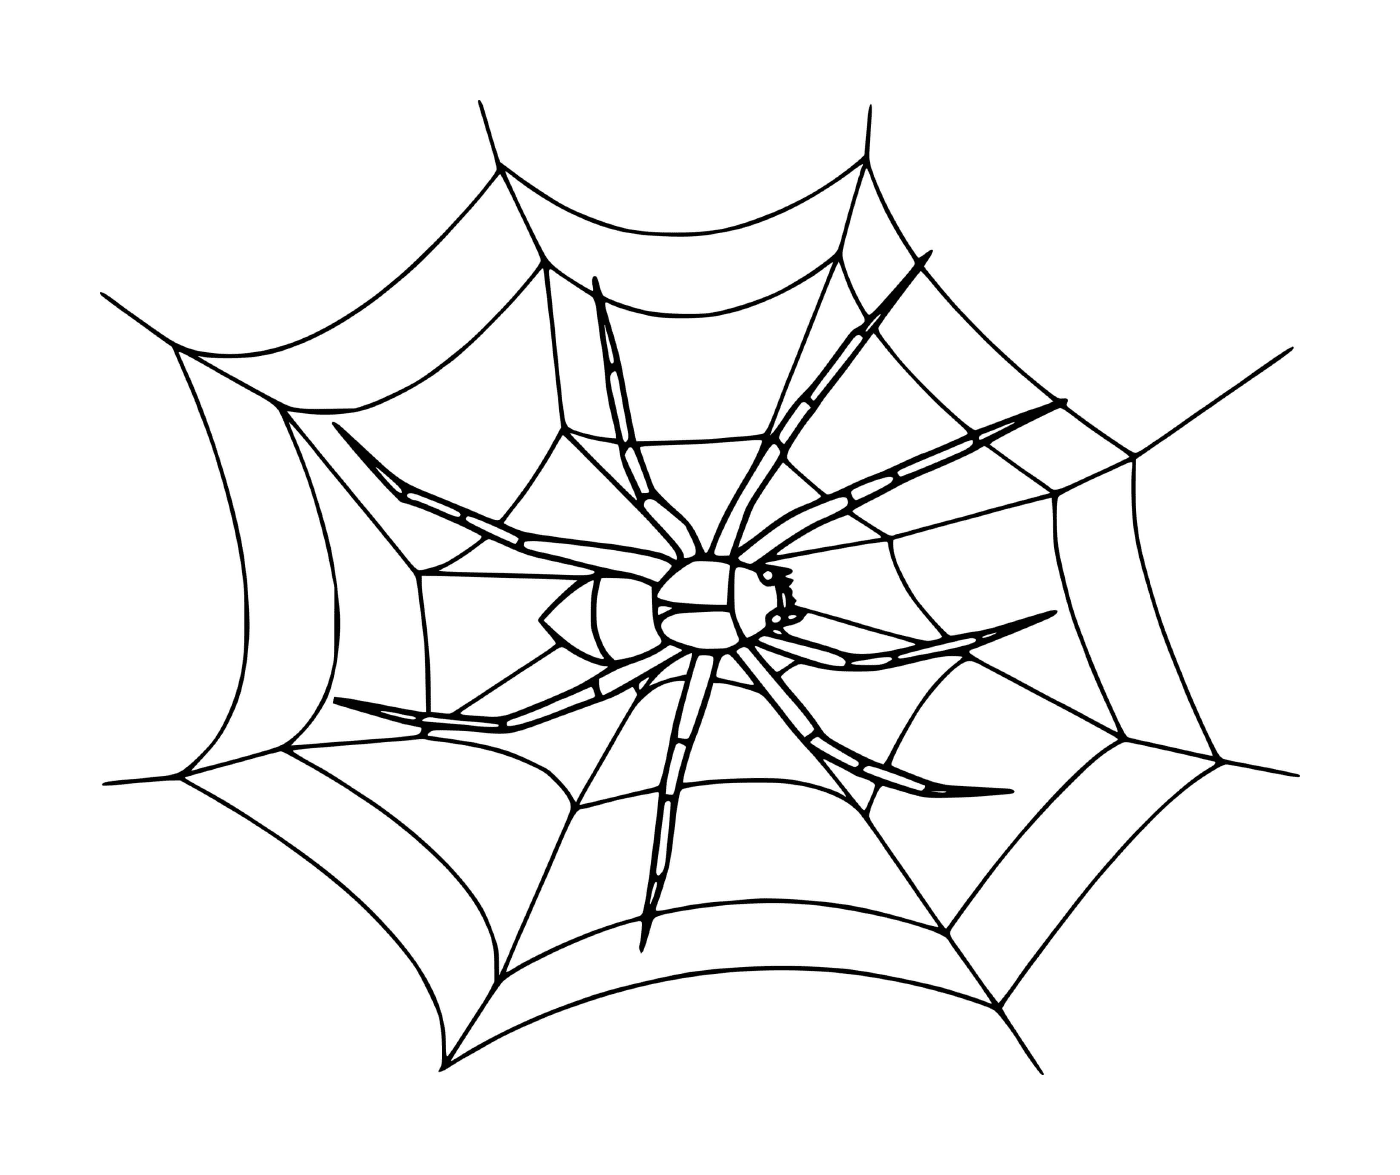  Ein realistisches Spinnennetz 